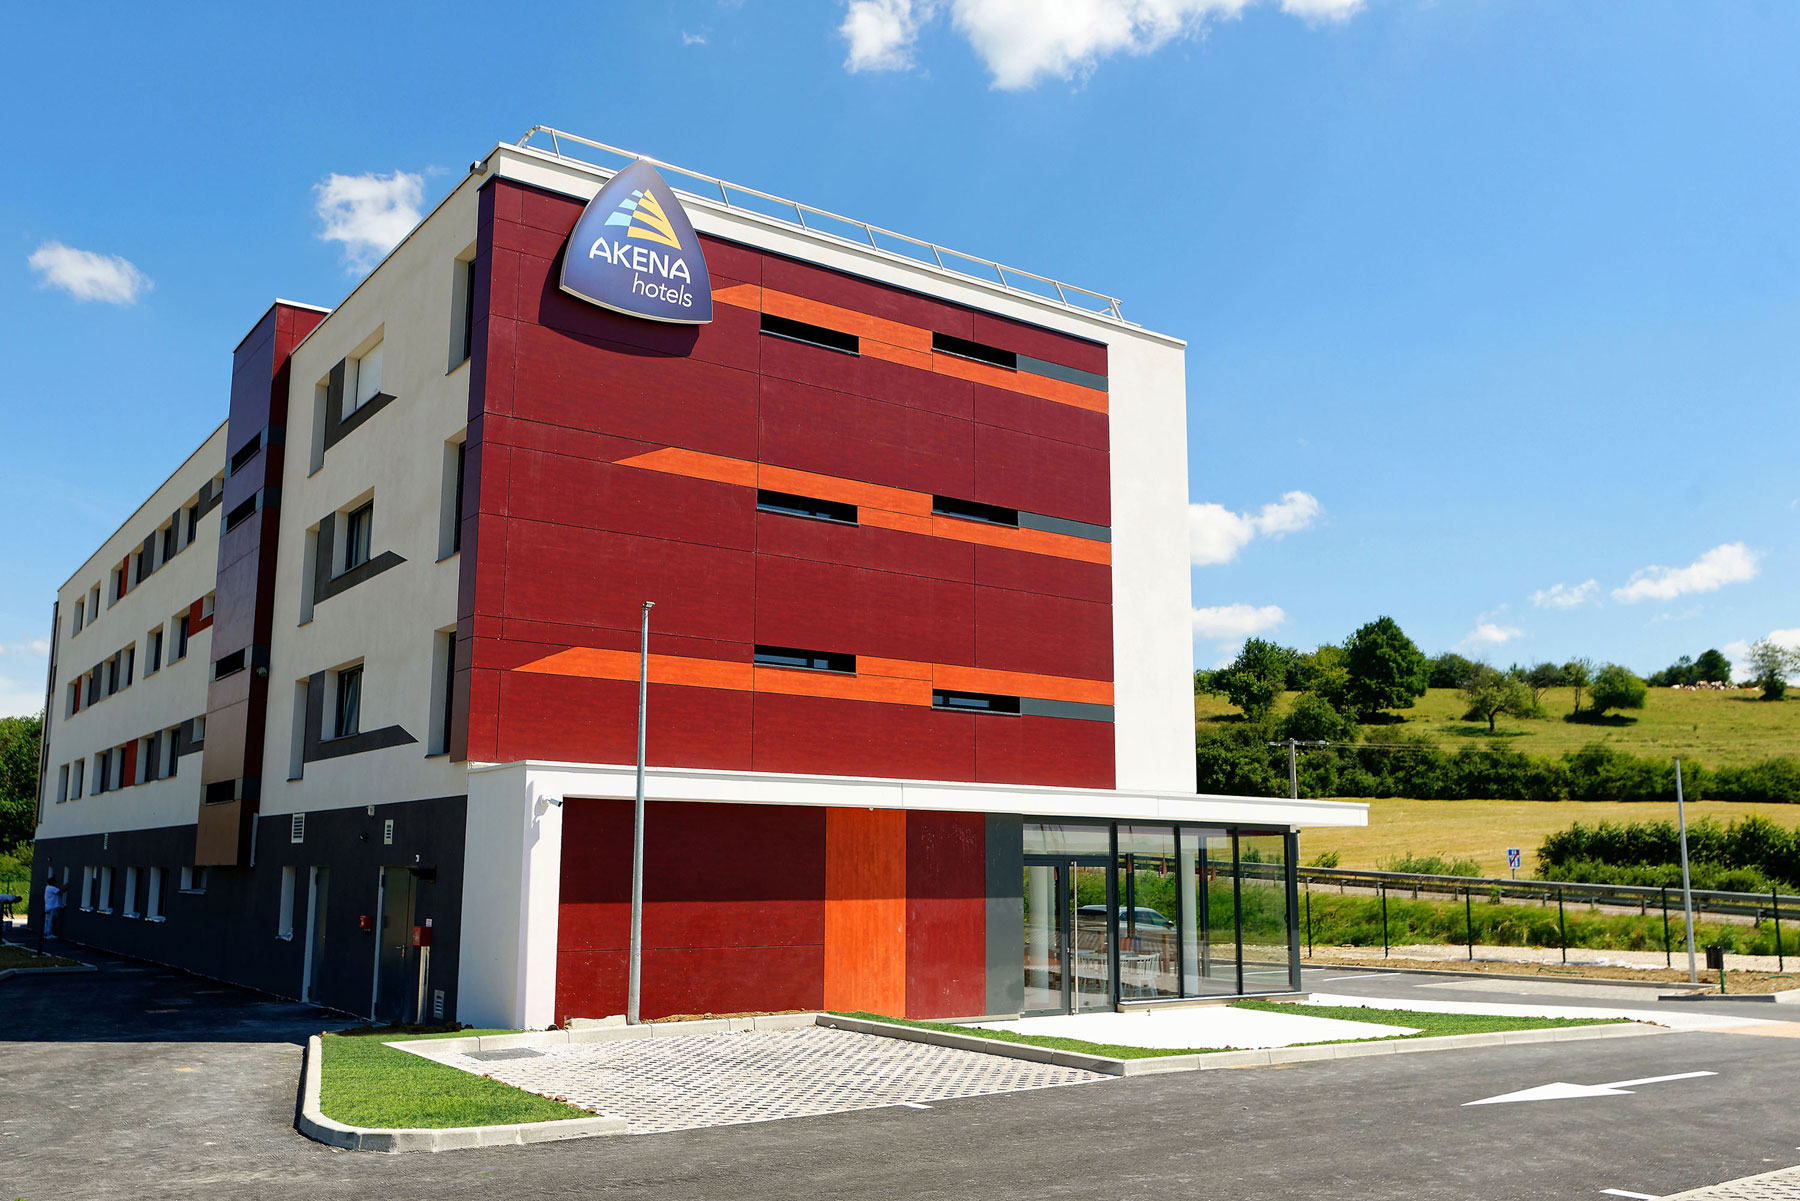 Réserver une chambre dans l'hotel 3 étoiles Akena de Besançon